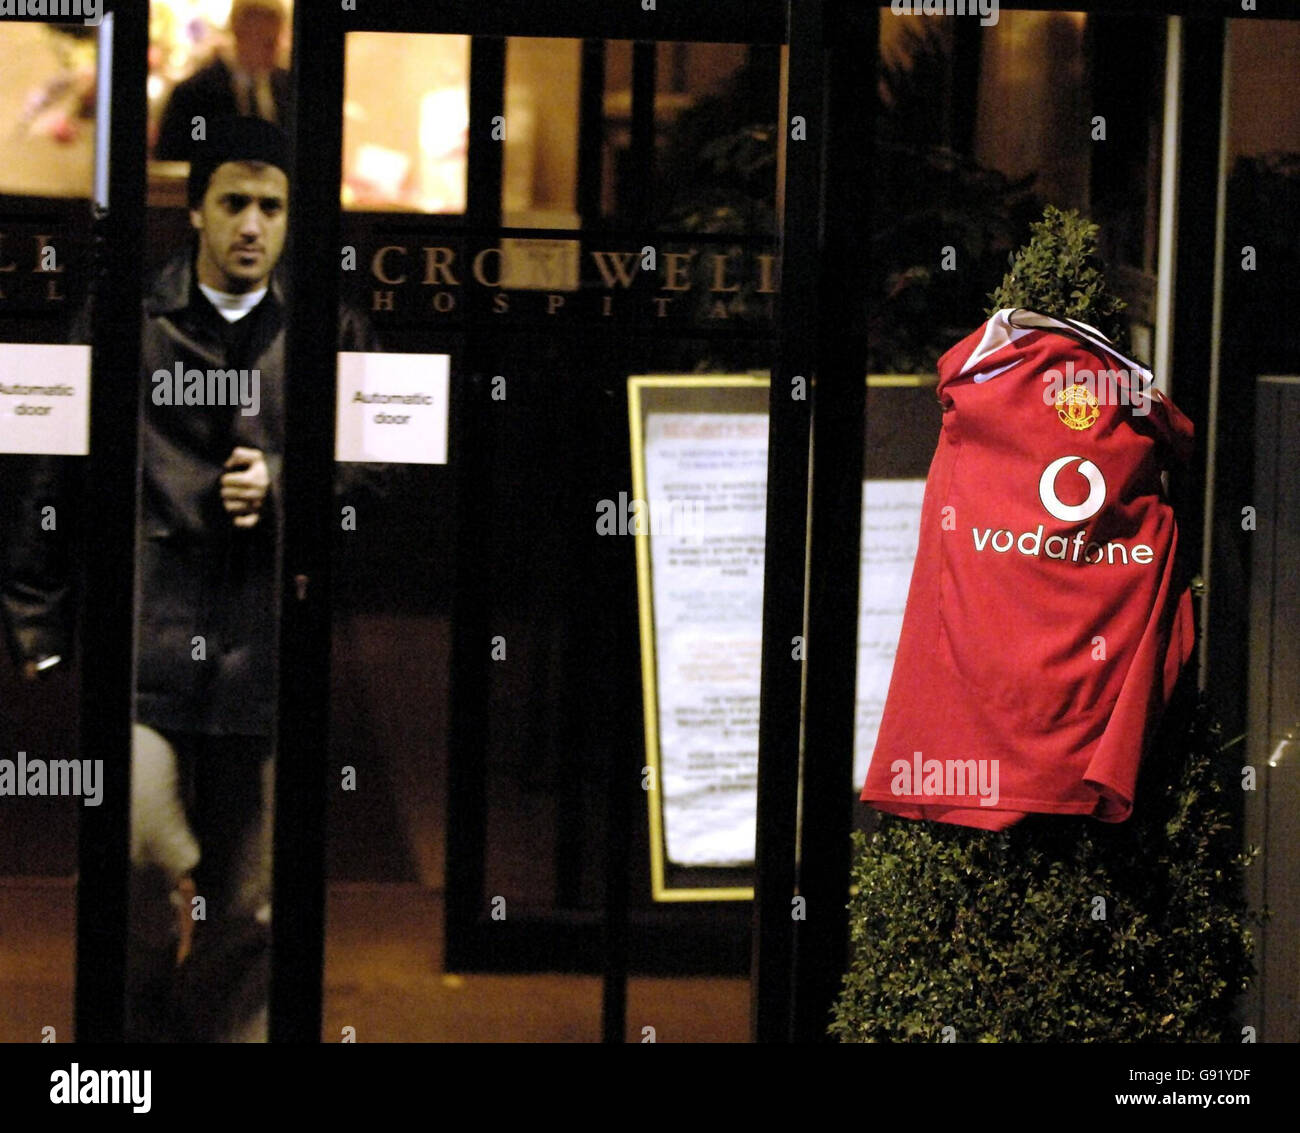 Ein Manchester United Trikot wurde am 24. November 2005 am Eingang des Cromwell Hospital im Westen Londons hinterlassen. Als Fußball-Legende setzt George Best seinen Kampf um das Leben fort. Siehe PA Geschichte GESUNDHEIT am besten. DRÜCKEN Sie VERBANDSFOTO. Bildnachweis sollte lauten: Andrew Stuart /PA. Stockfoto